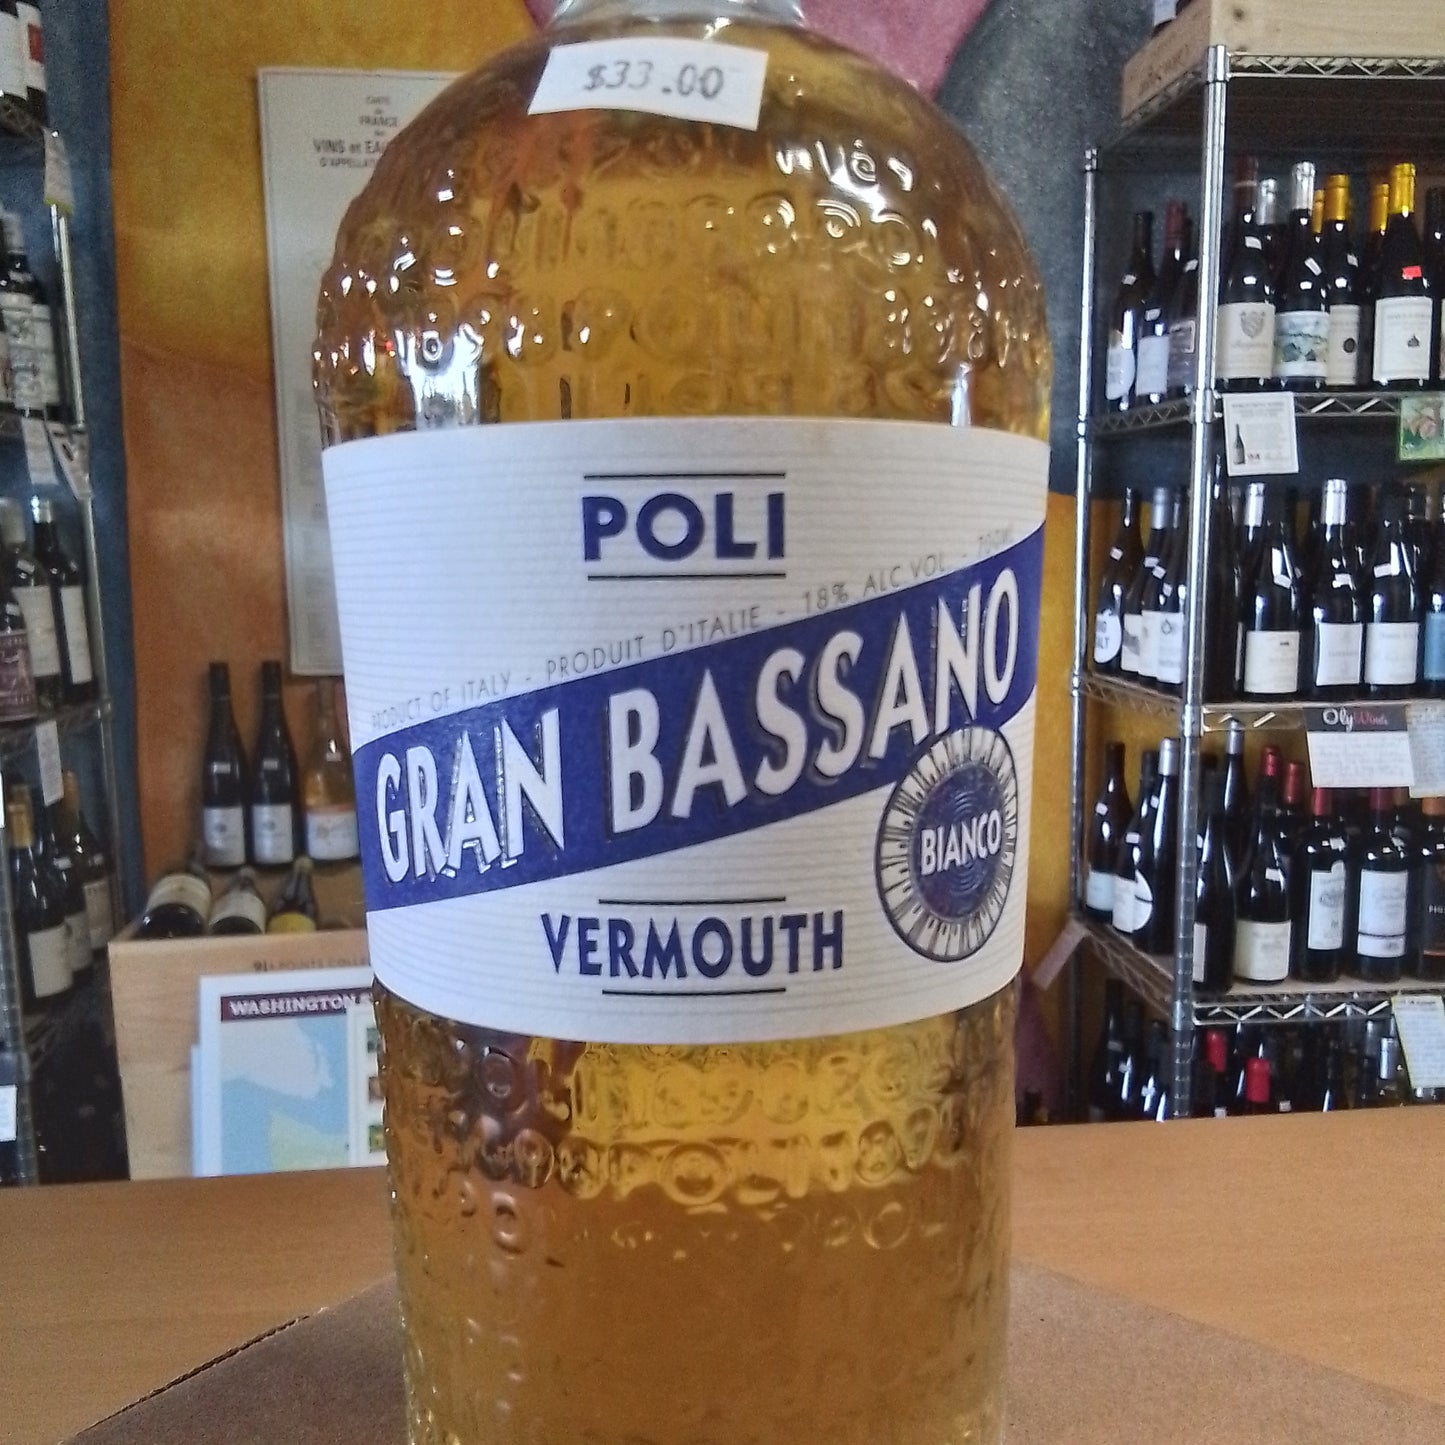 POLI Vermouth 'Gran Bassano Bianco' (Italy)